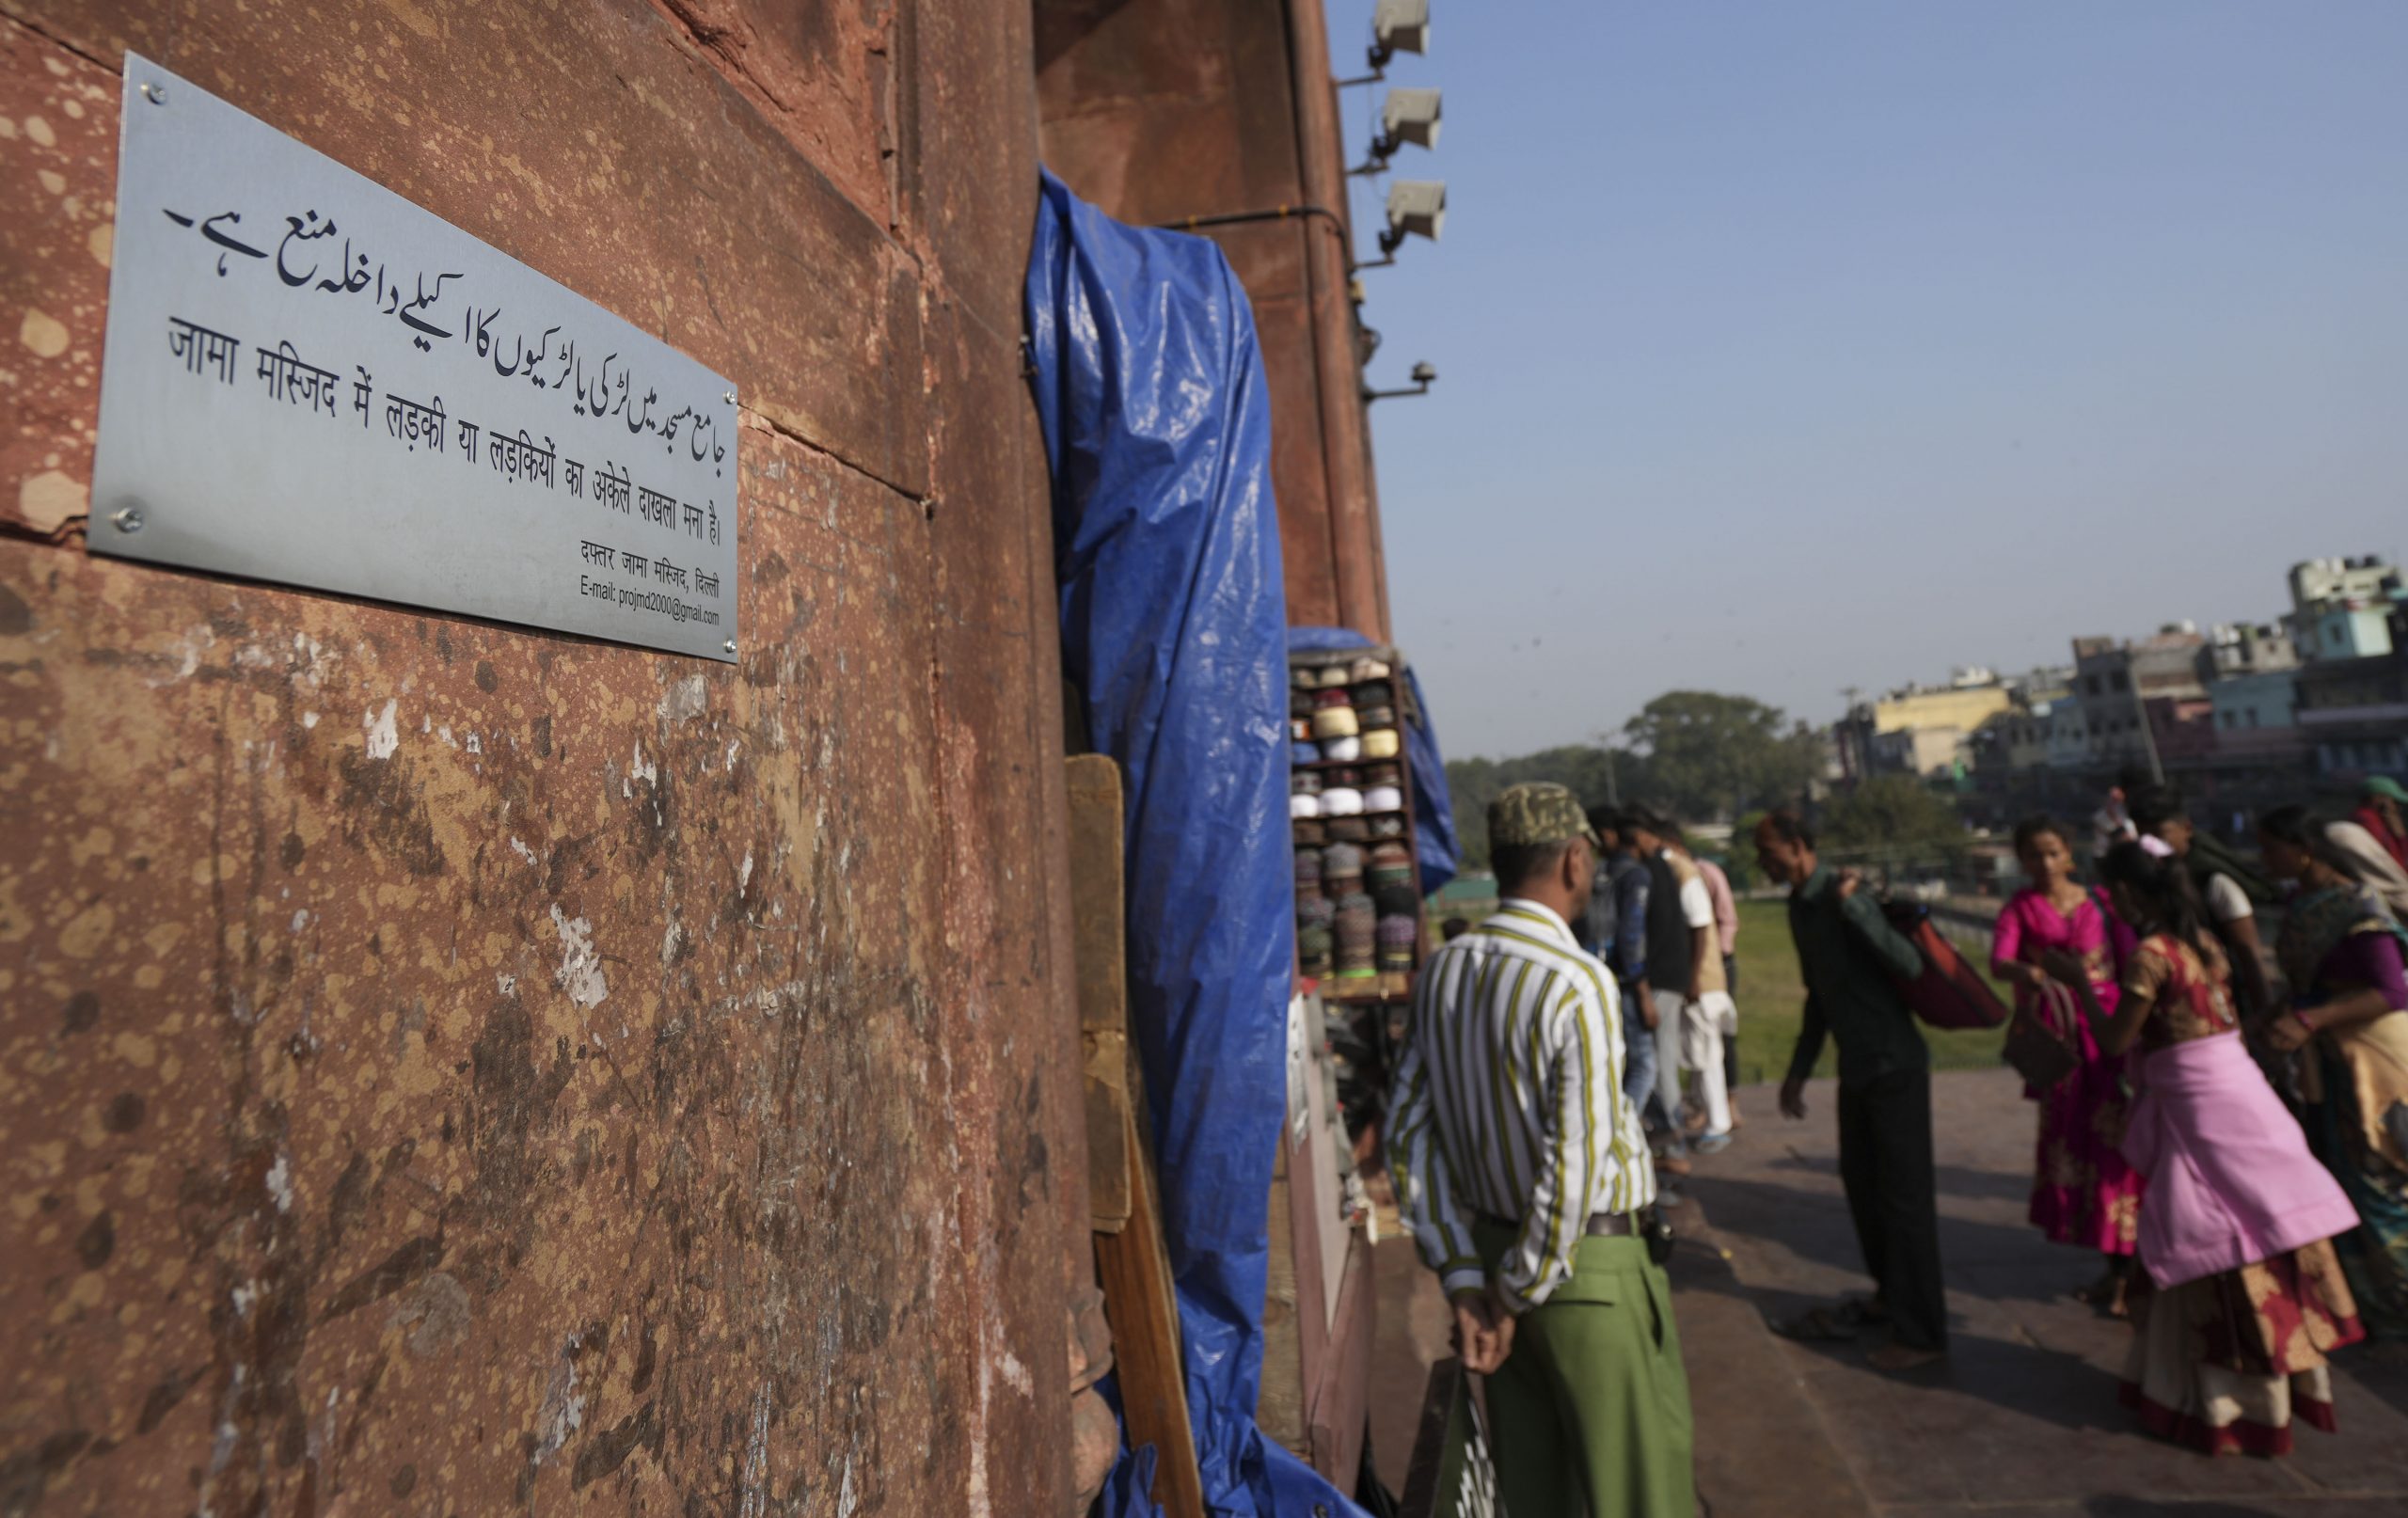 दिल्ली: आलोचना के बाद जामा मस्जिद में महिलाओं के प्रवेश पर रोक का आदेश वापस